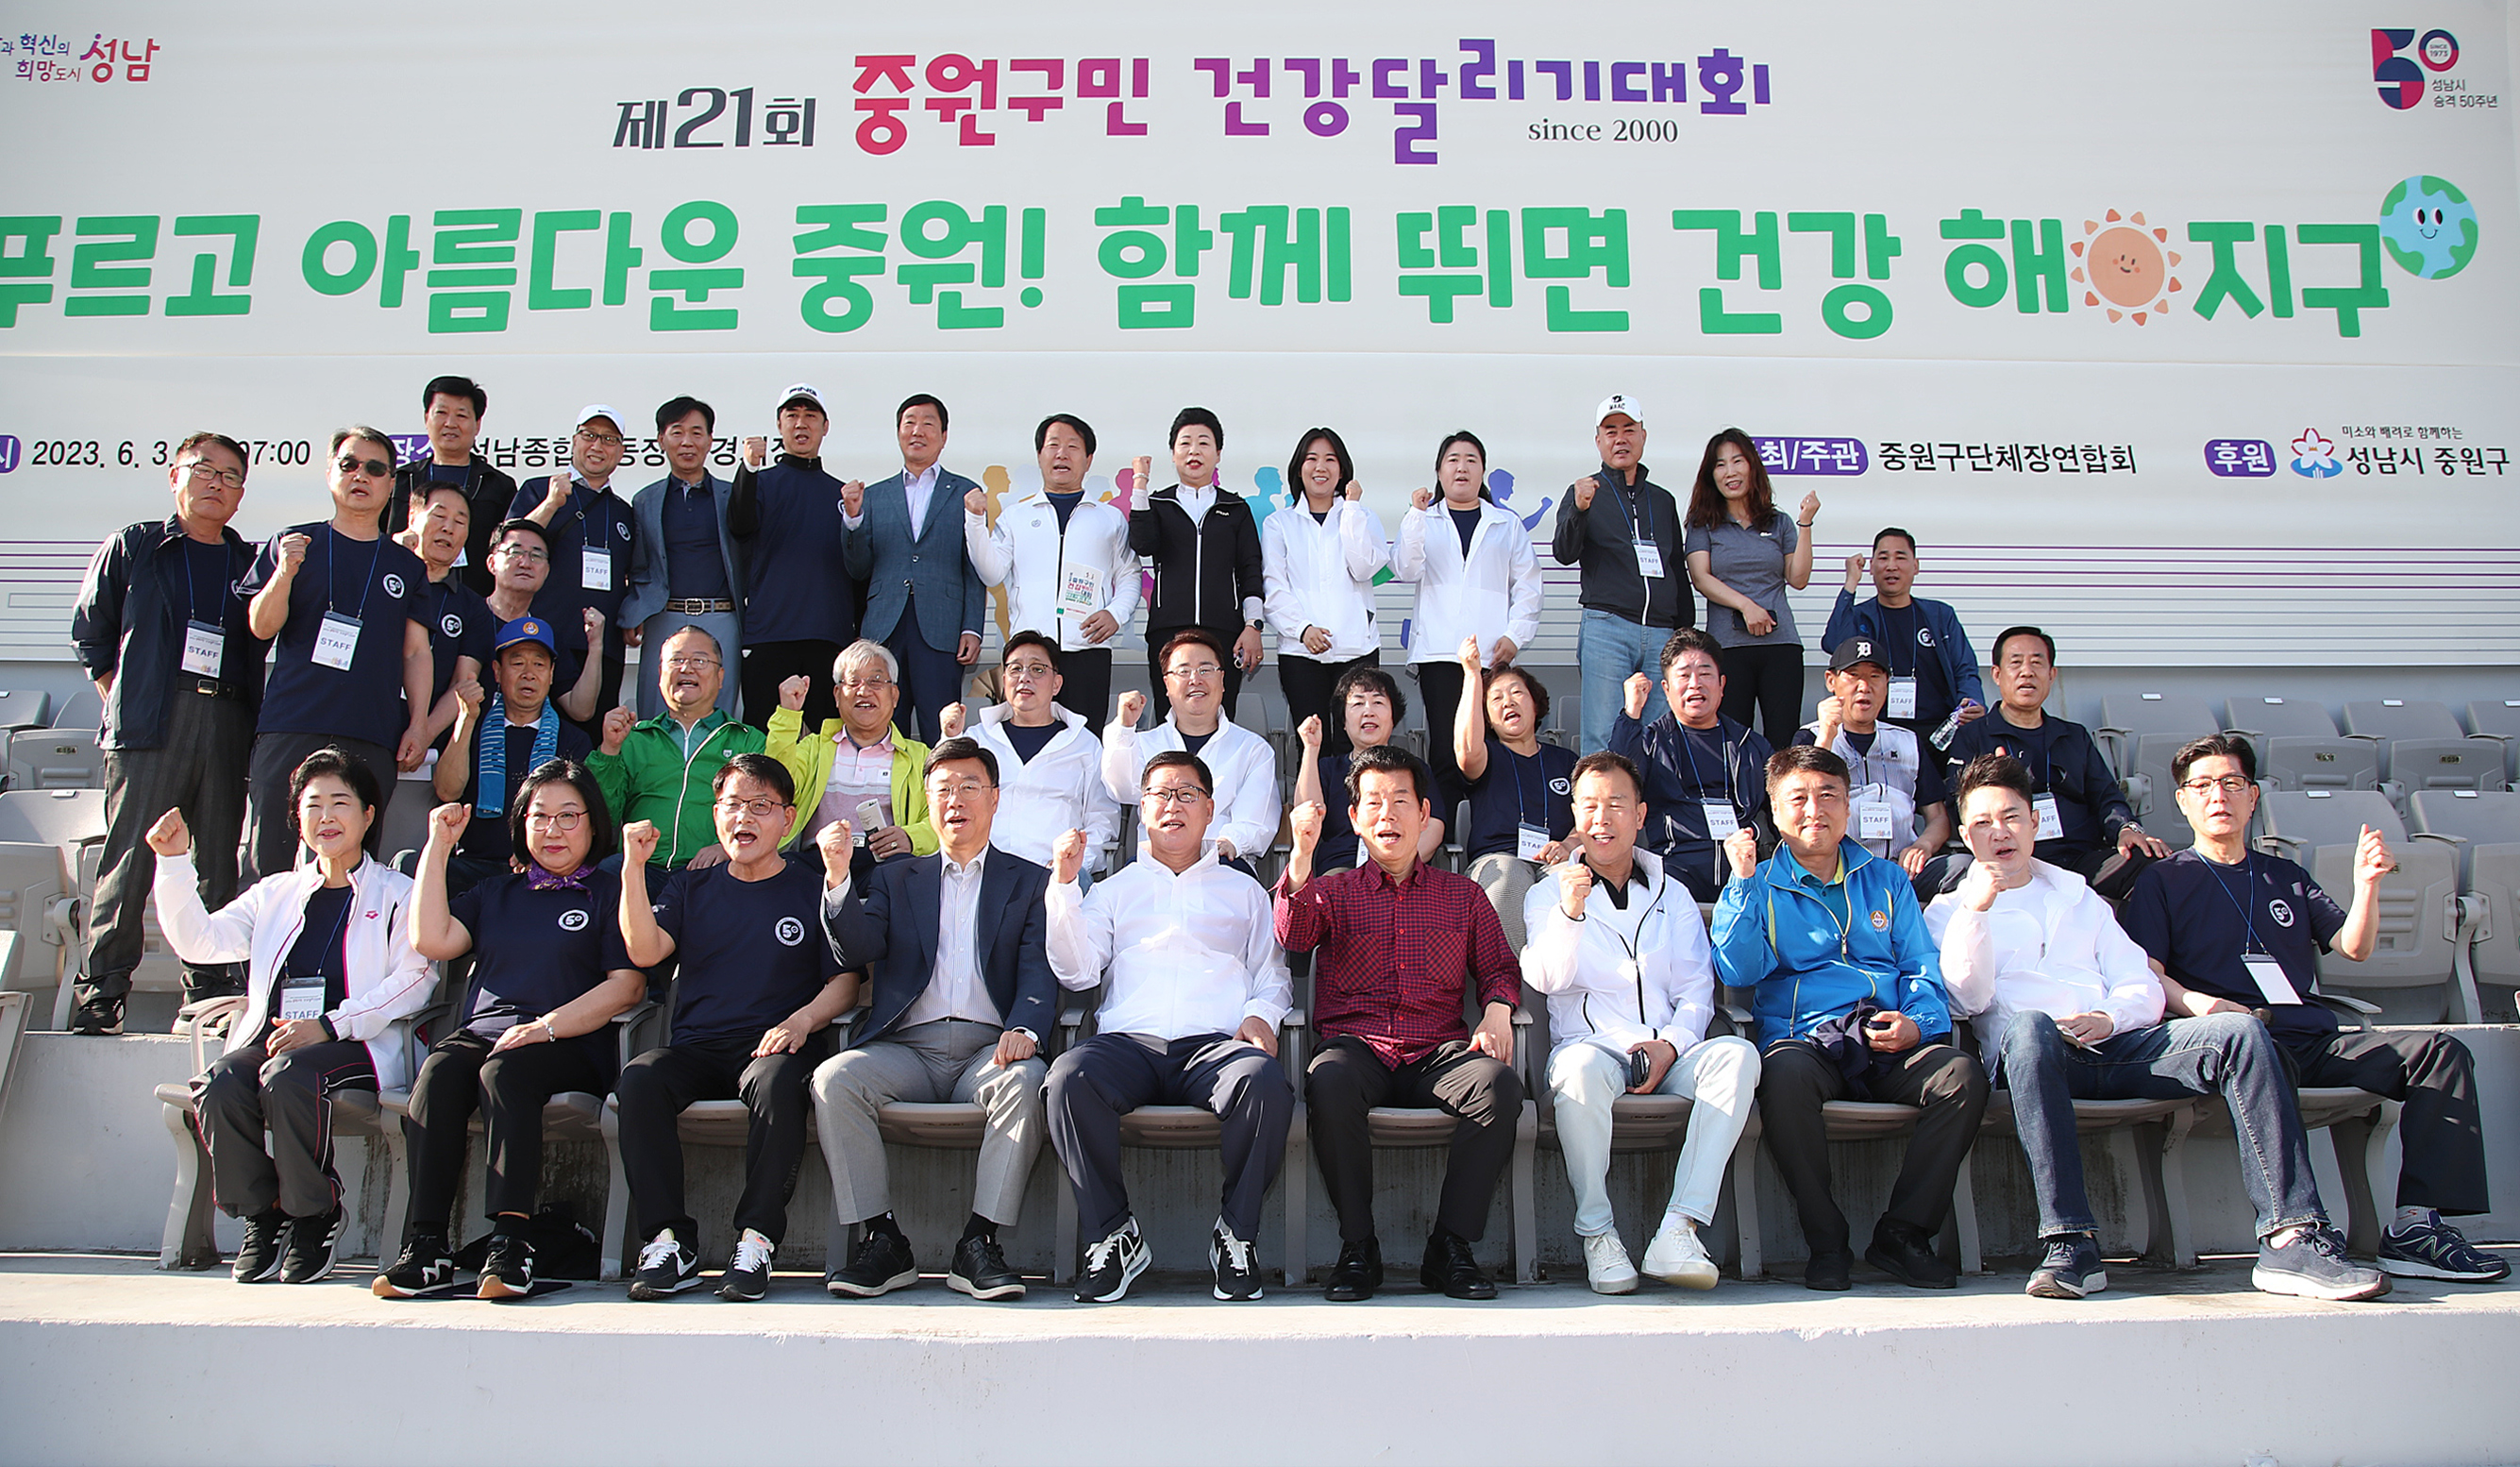  제21회 중원구민 건강달리기대회  - 11